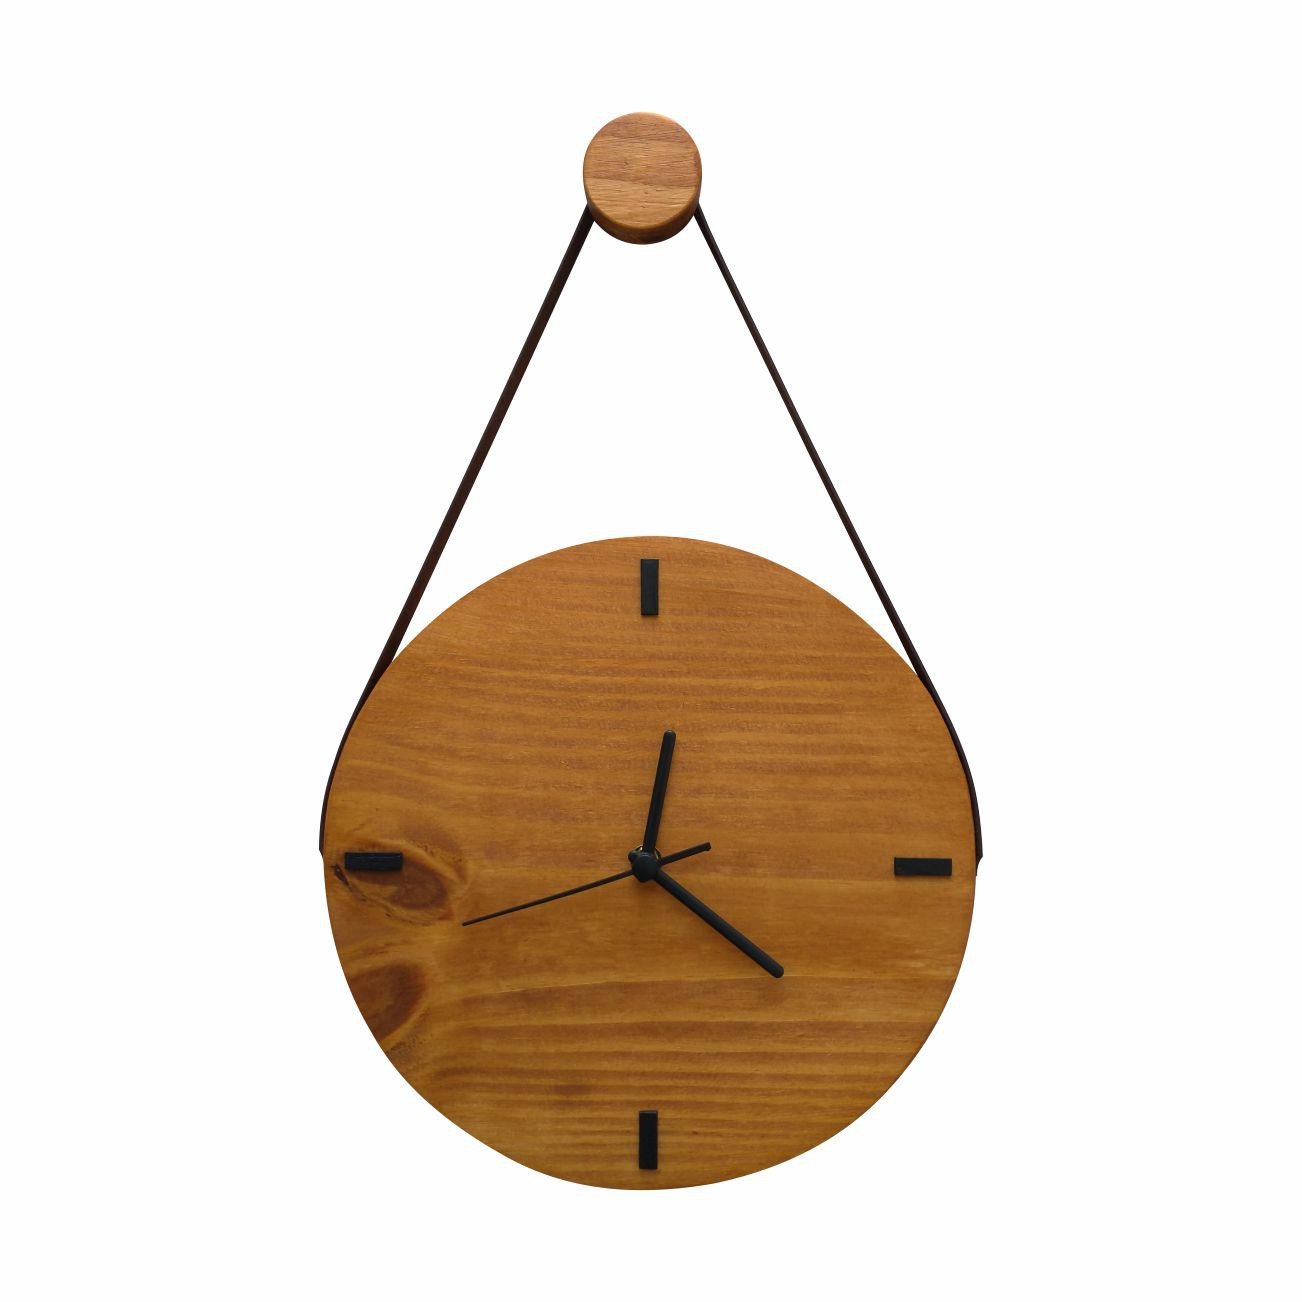 Relógio Decorativo Edward Clock Rústico com Alça